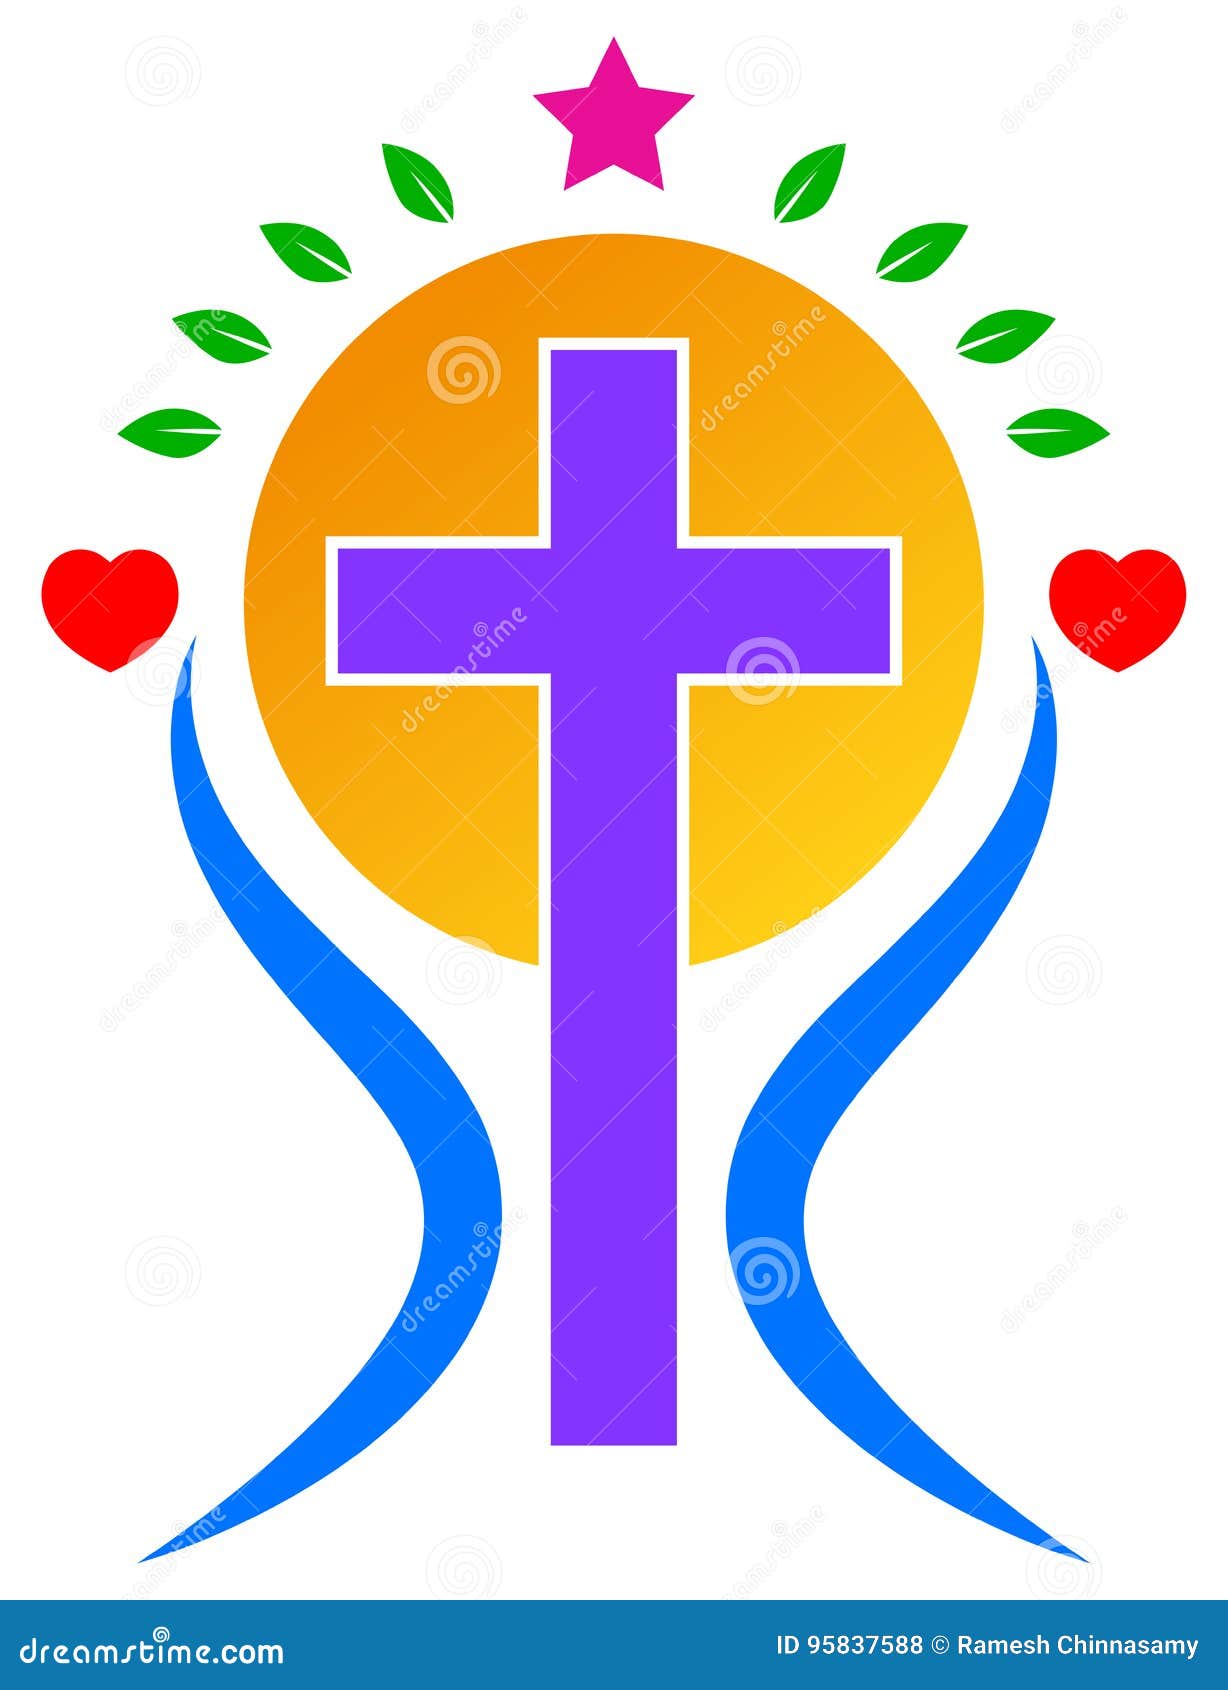 christianity logo